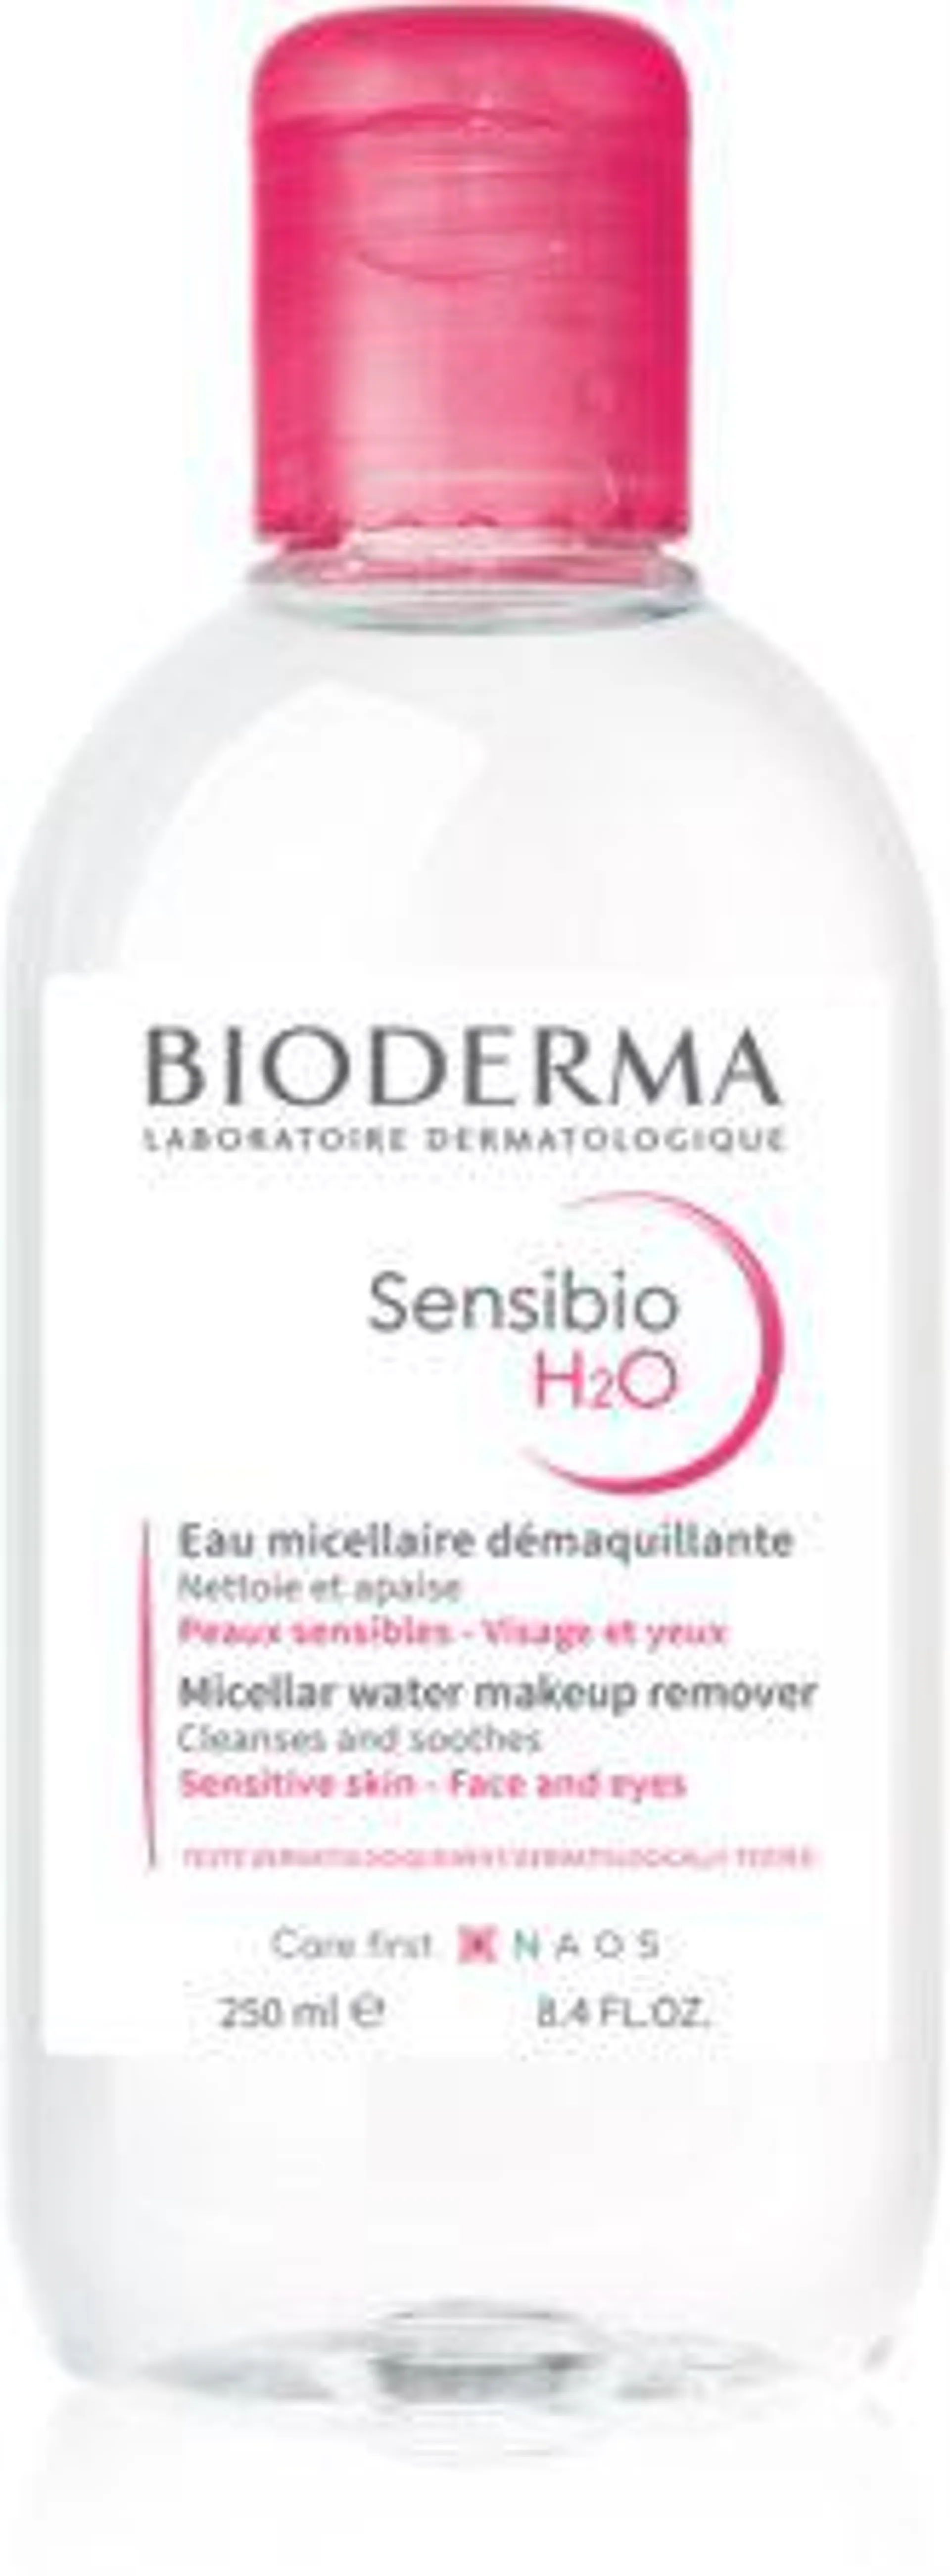 Sensibio H2O